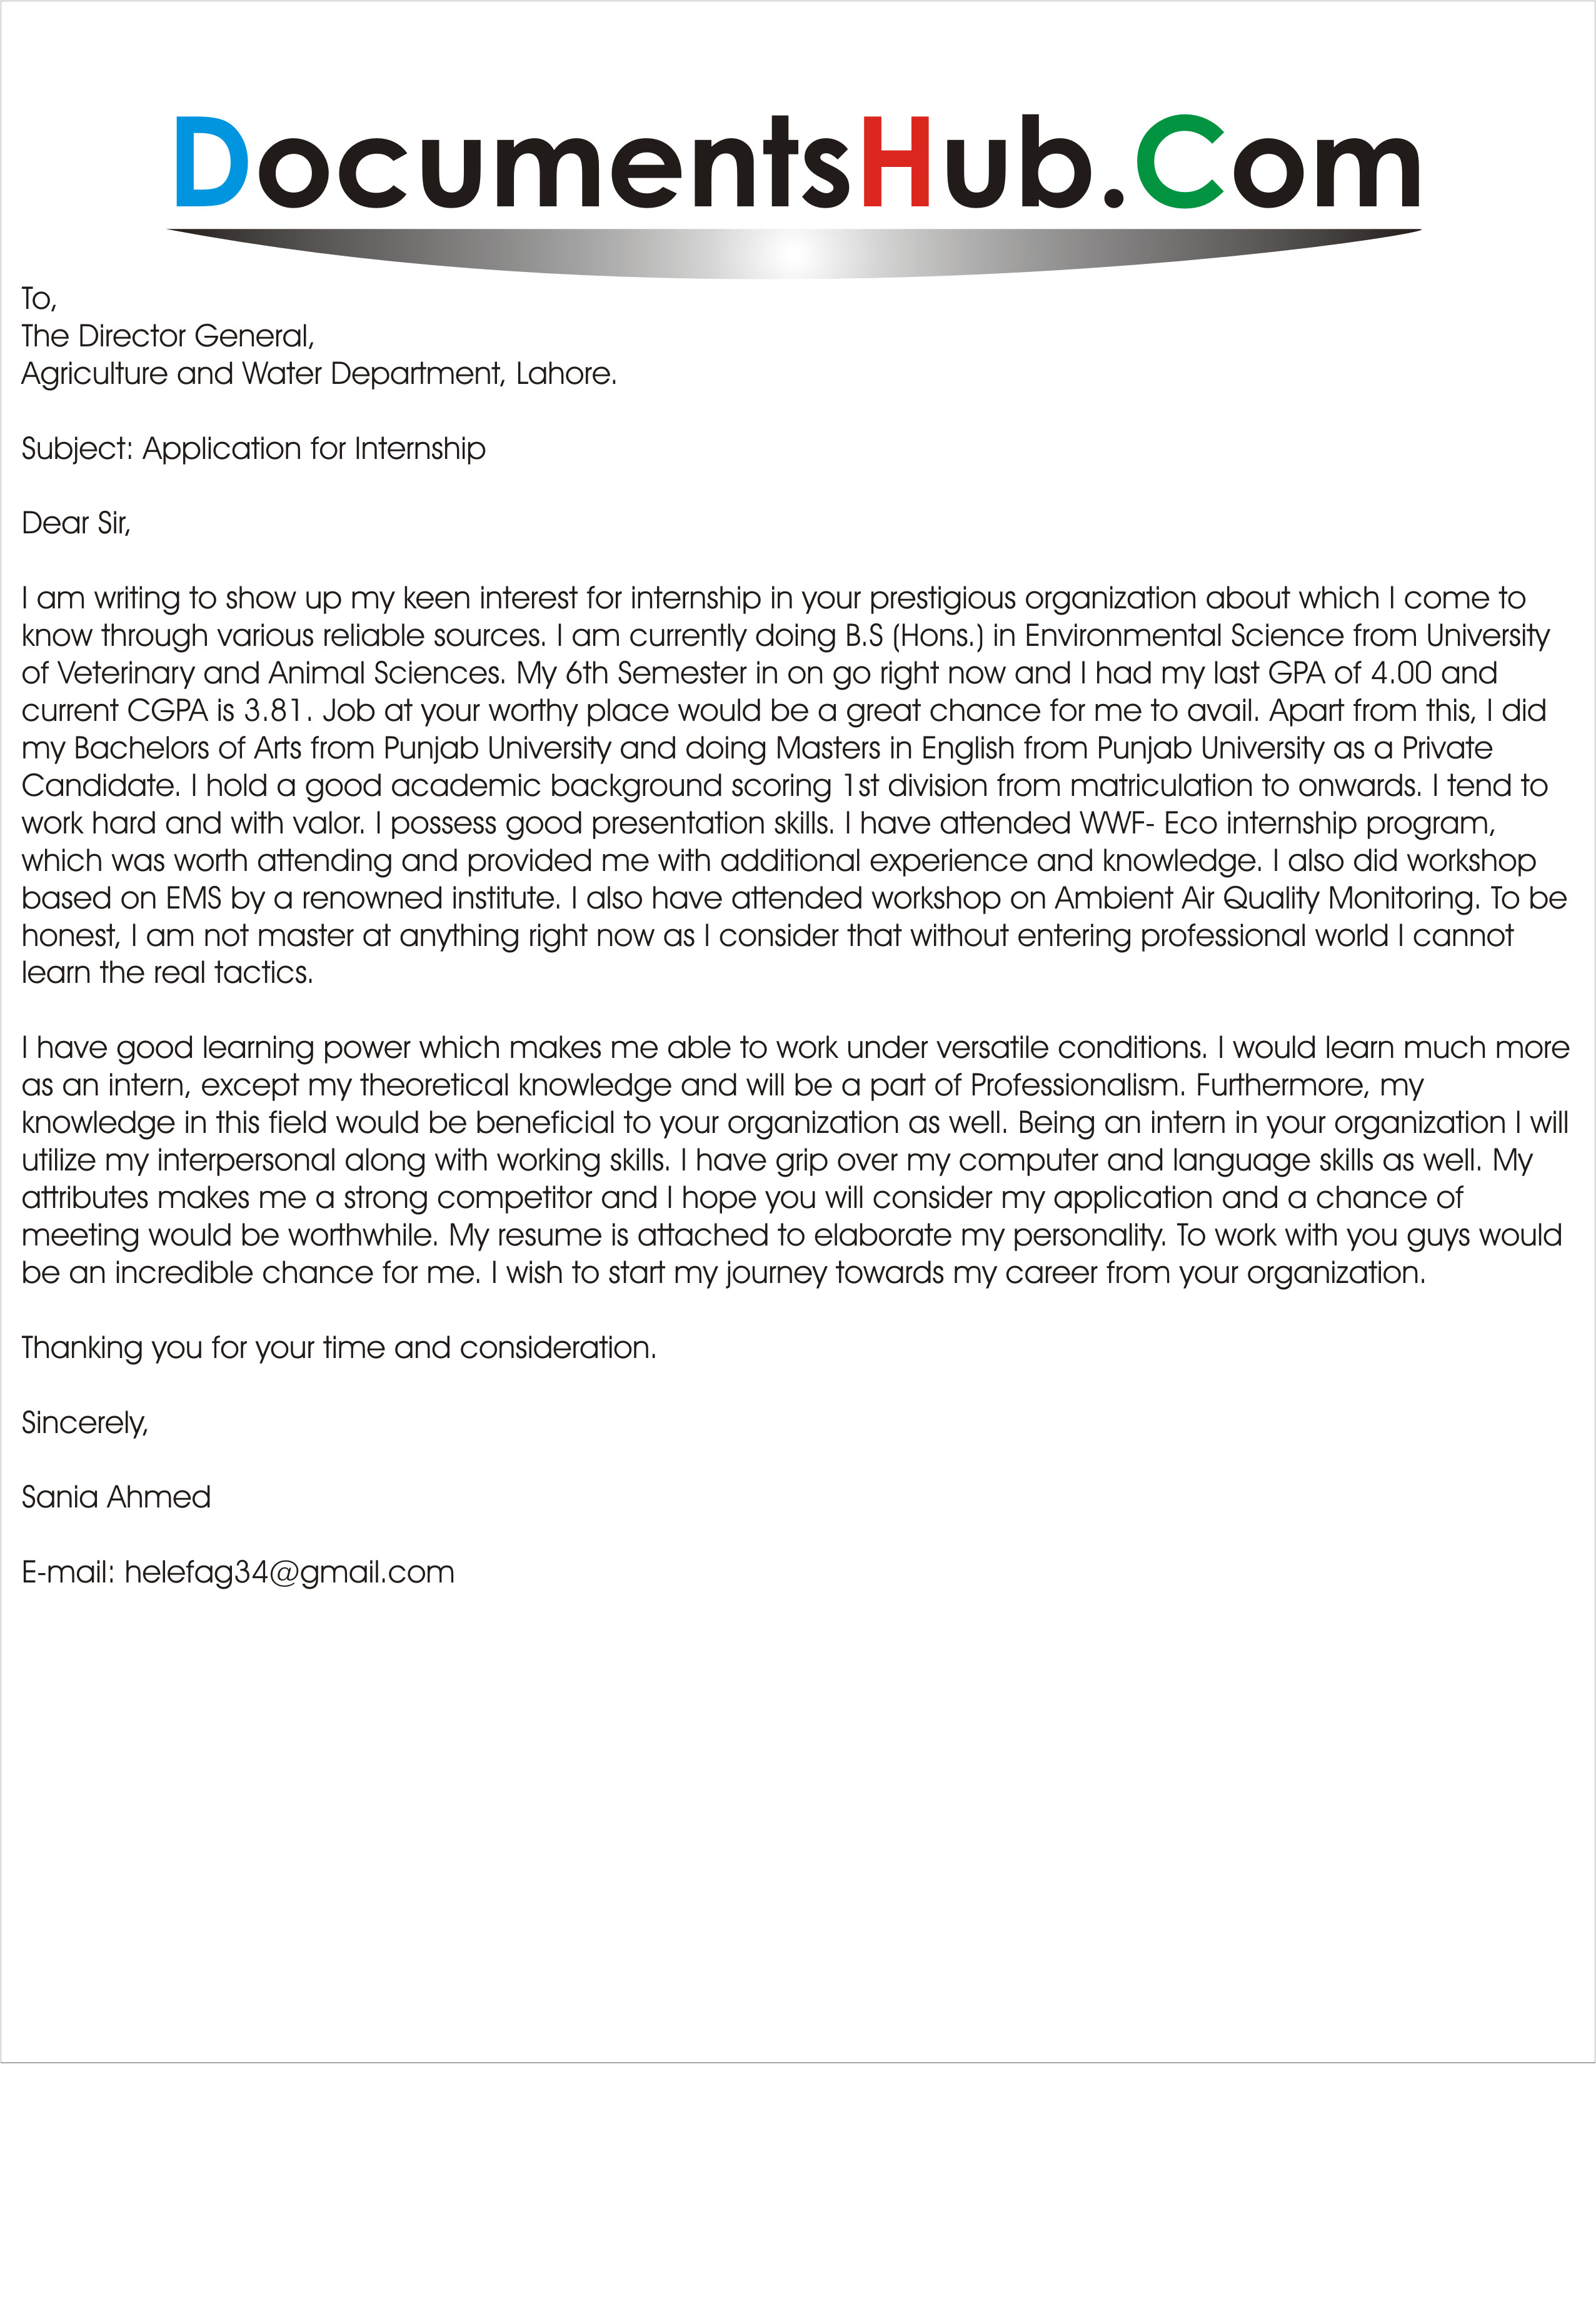 Sample Cover Letter for Environmental Internship Cover Letter for Environmental Internship Documentshub Com